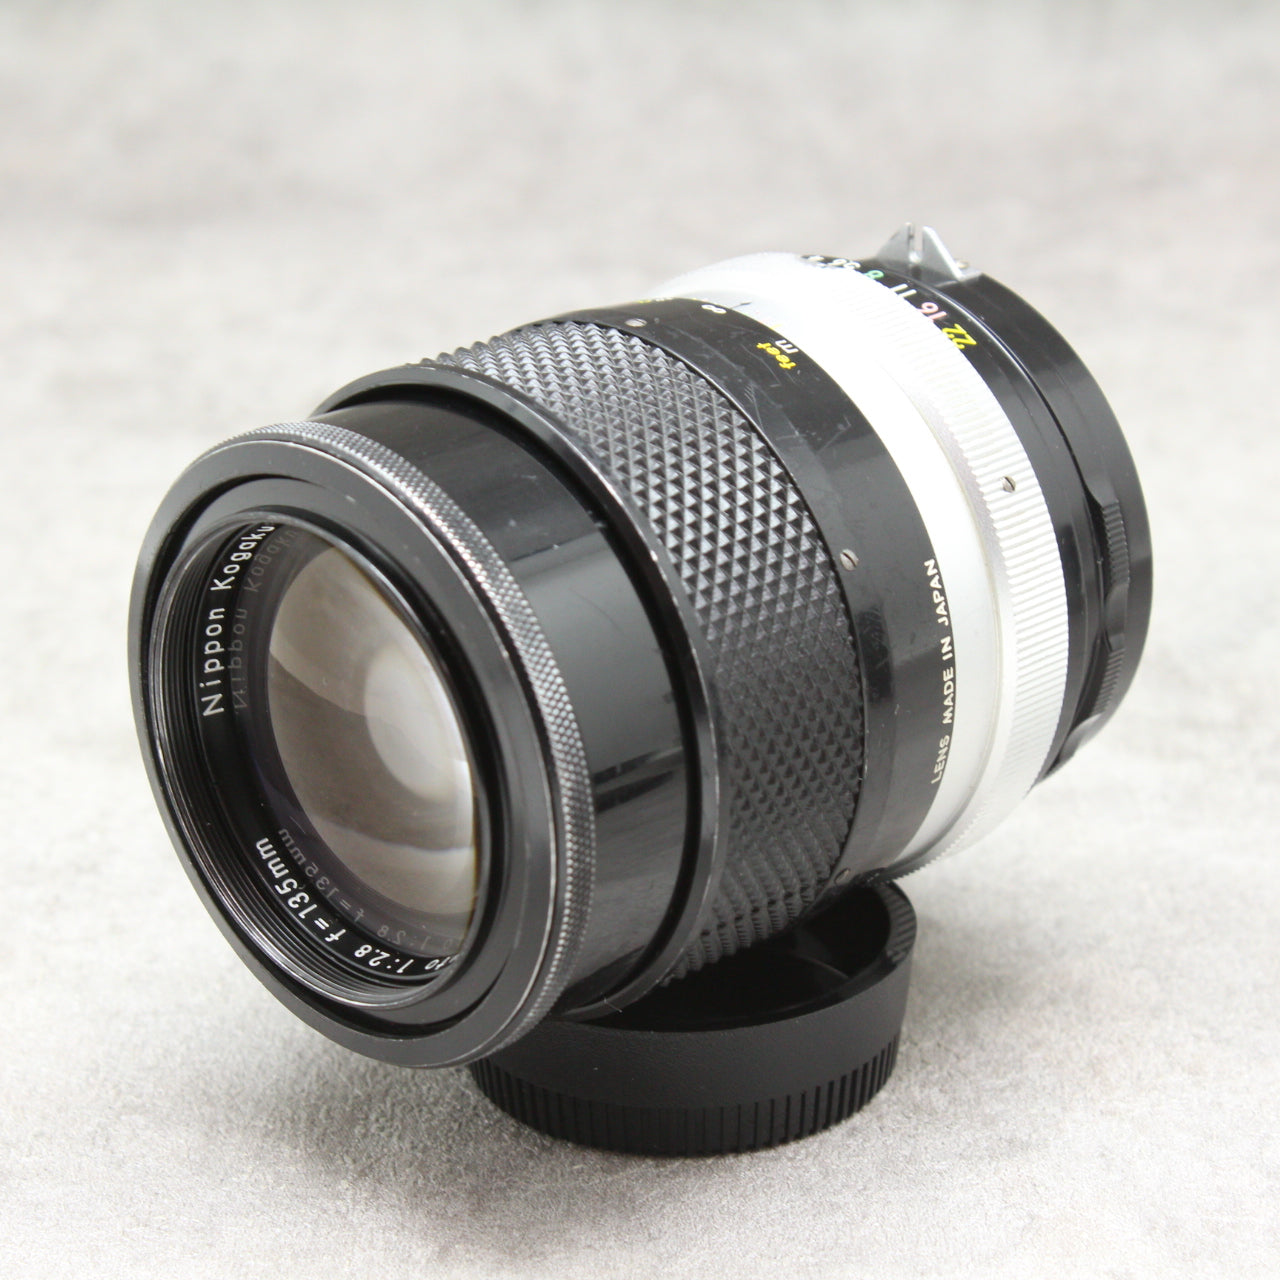 Nikon ニコン NIKKOR Q 135mm f2.8 単焦点 レンズ 84